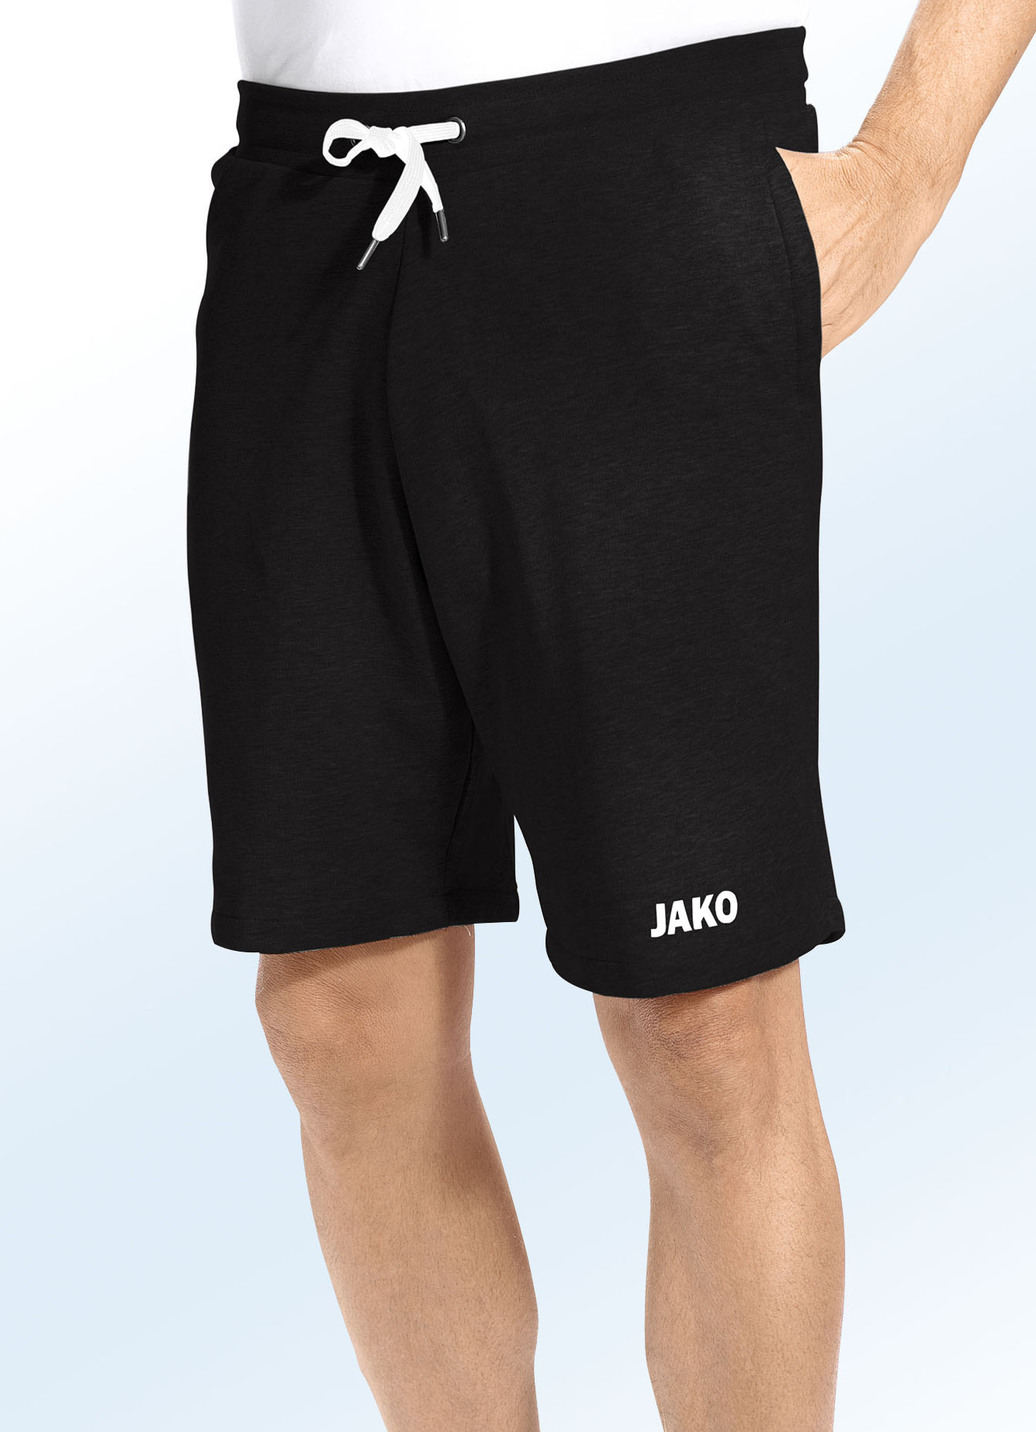 "Jako"-Shorts in 3 Farben, Schwarz, Größe 3XL (58/60) von Jako